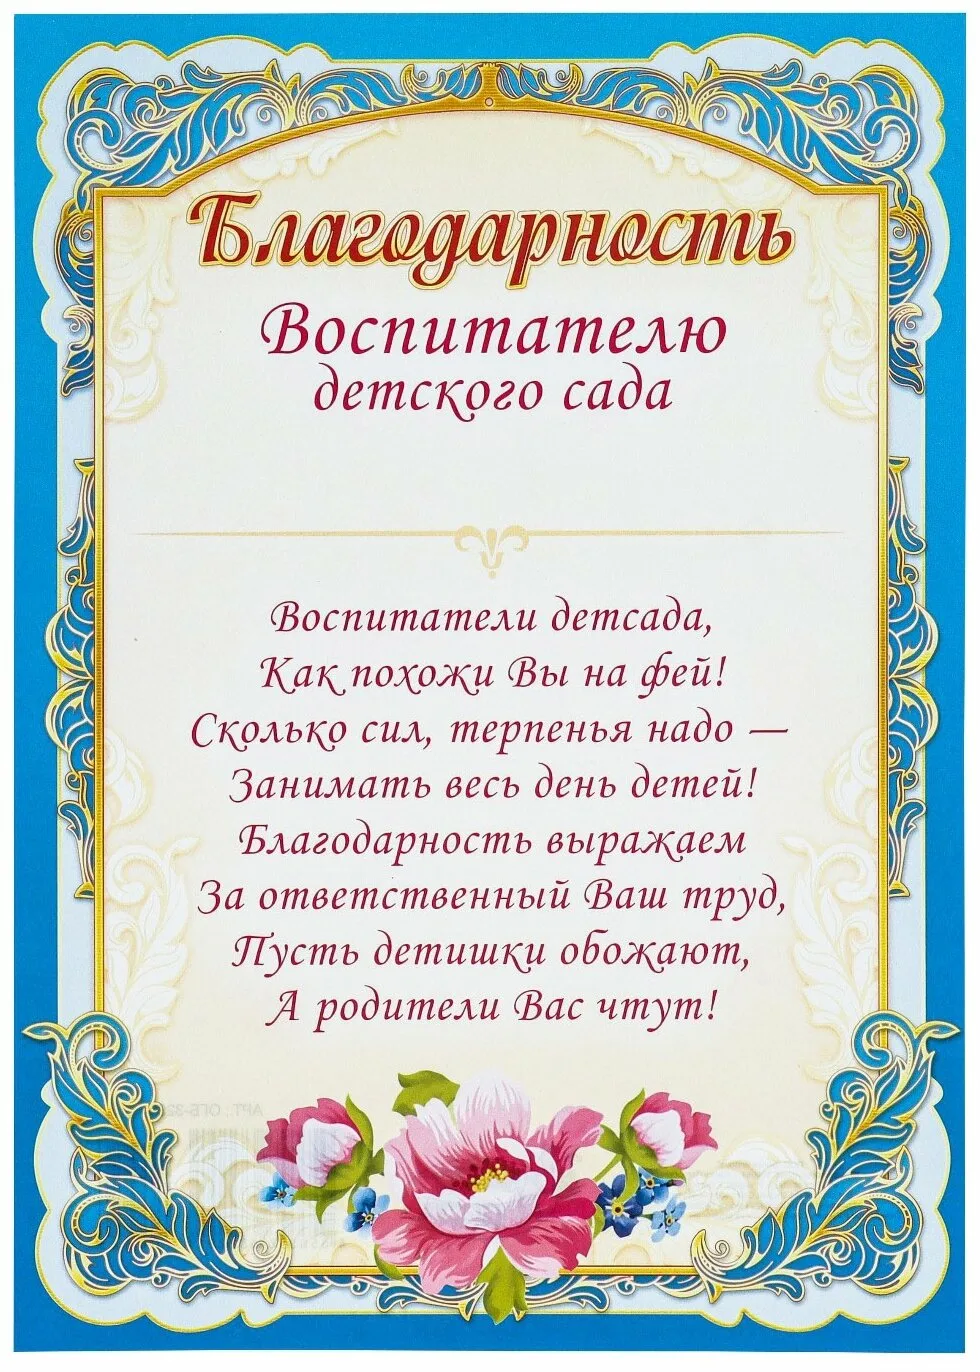 Фото Поздравление учителю татарского языка #59